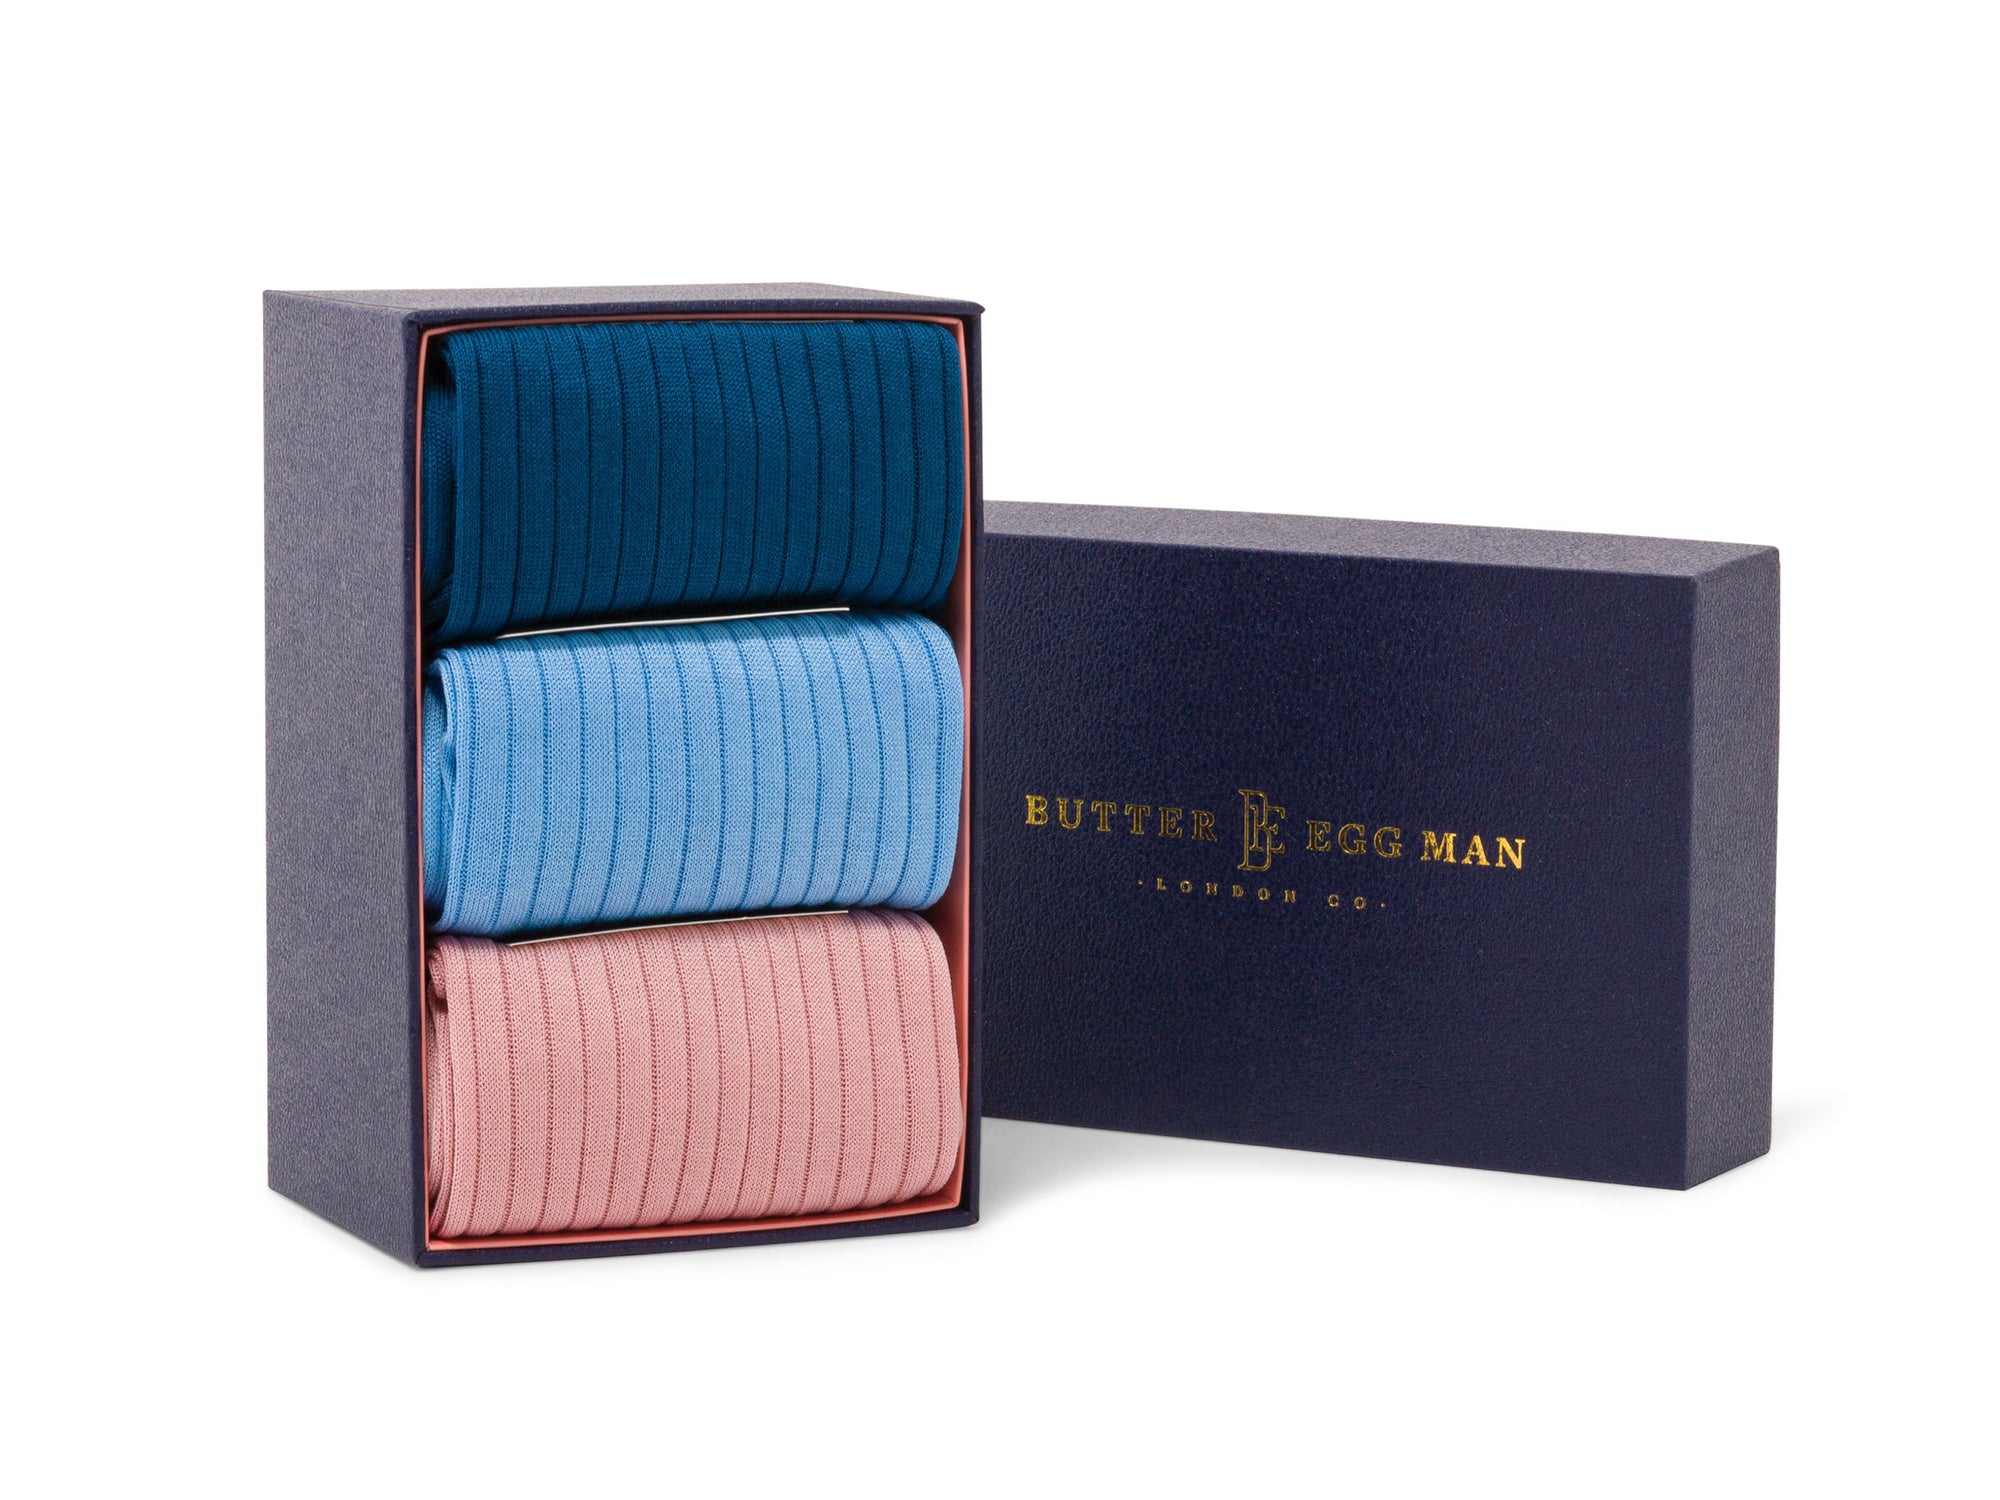 Louis 3 pair Box Set - Pink, Light Blue & Teal